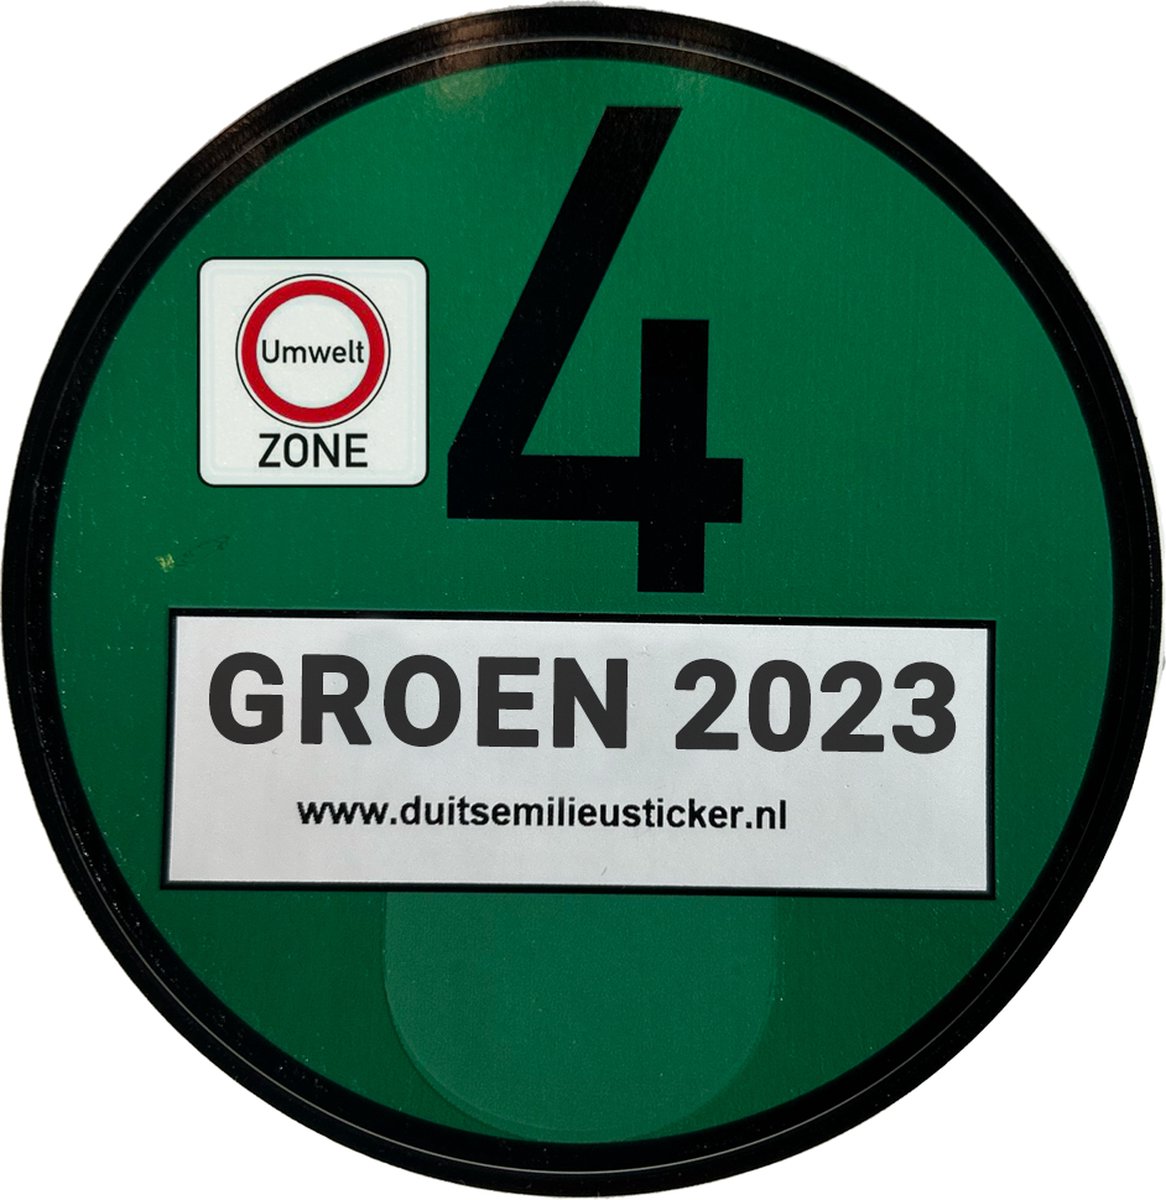 Milieusticker voor Duitsland - Euro 4 sticker - Groen